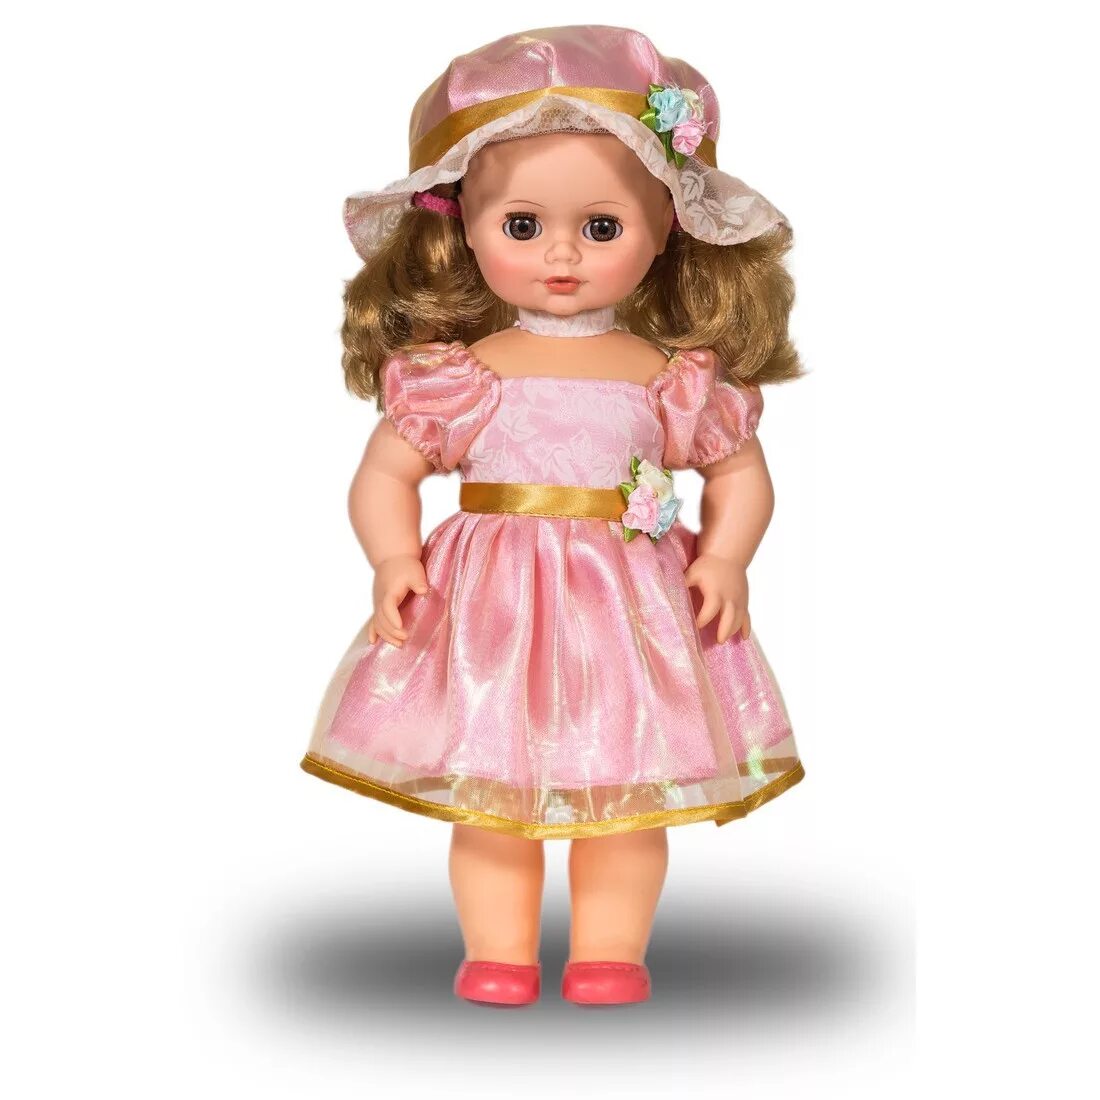 Картинка кукла. Интерактивная кукла Весна Инна 48, 43 см, в2256/о. Интерактивная кукла Весна Инна модница 1, 43 см, в3724/о. Интерактивная кукла Весна Инна 6, 43 см, в2953/о. Кукла Инна Весна.